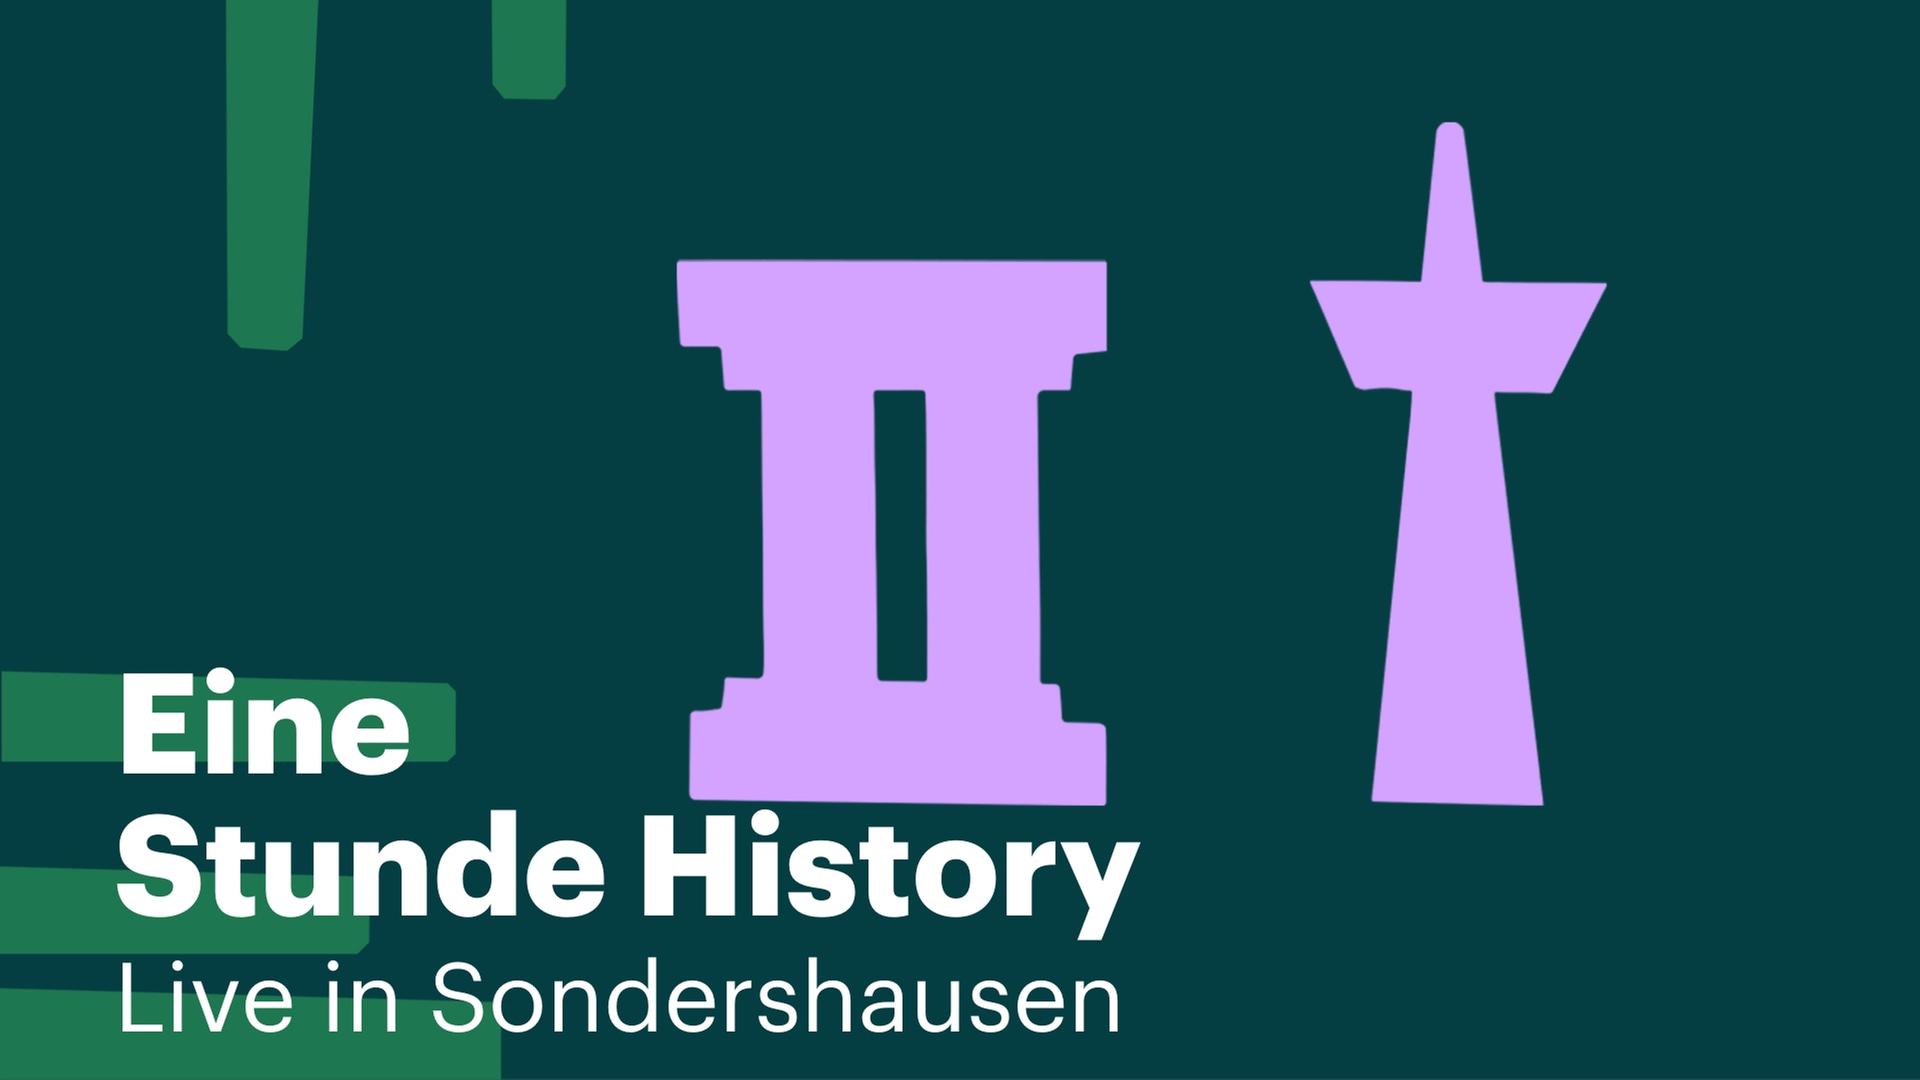 Das Visual zeigt einen weißen Schriftzug von "Eine Stunde History" auf einem mittel- bis dunkelgrünen Hintergrund und zeigt eine Säule sowie einen Fernsehtum in der Farbe lila.